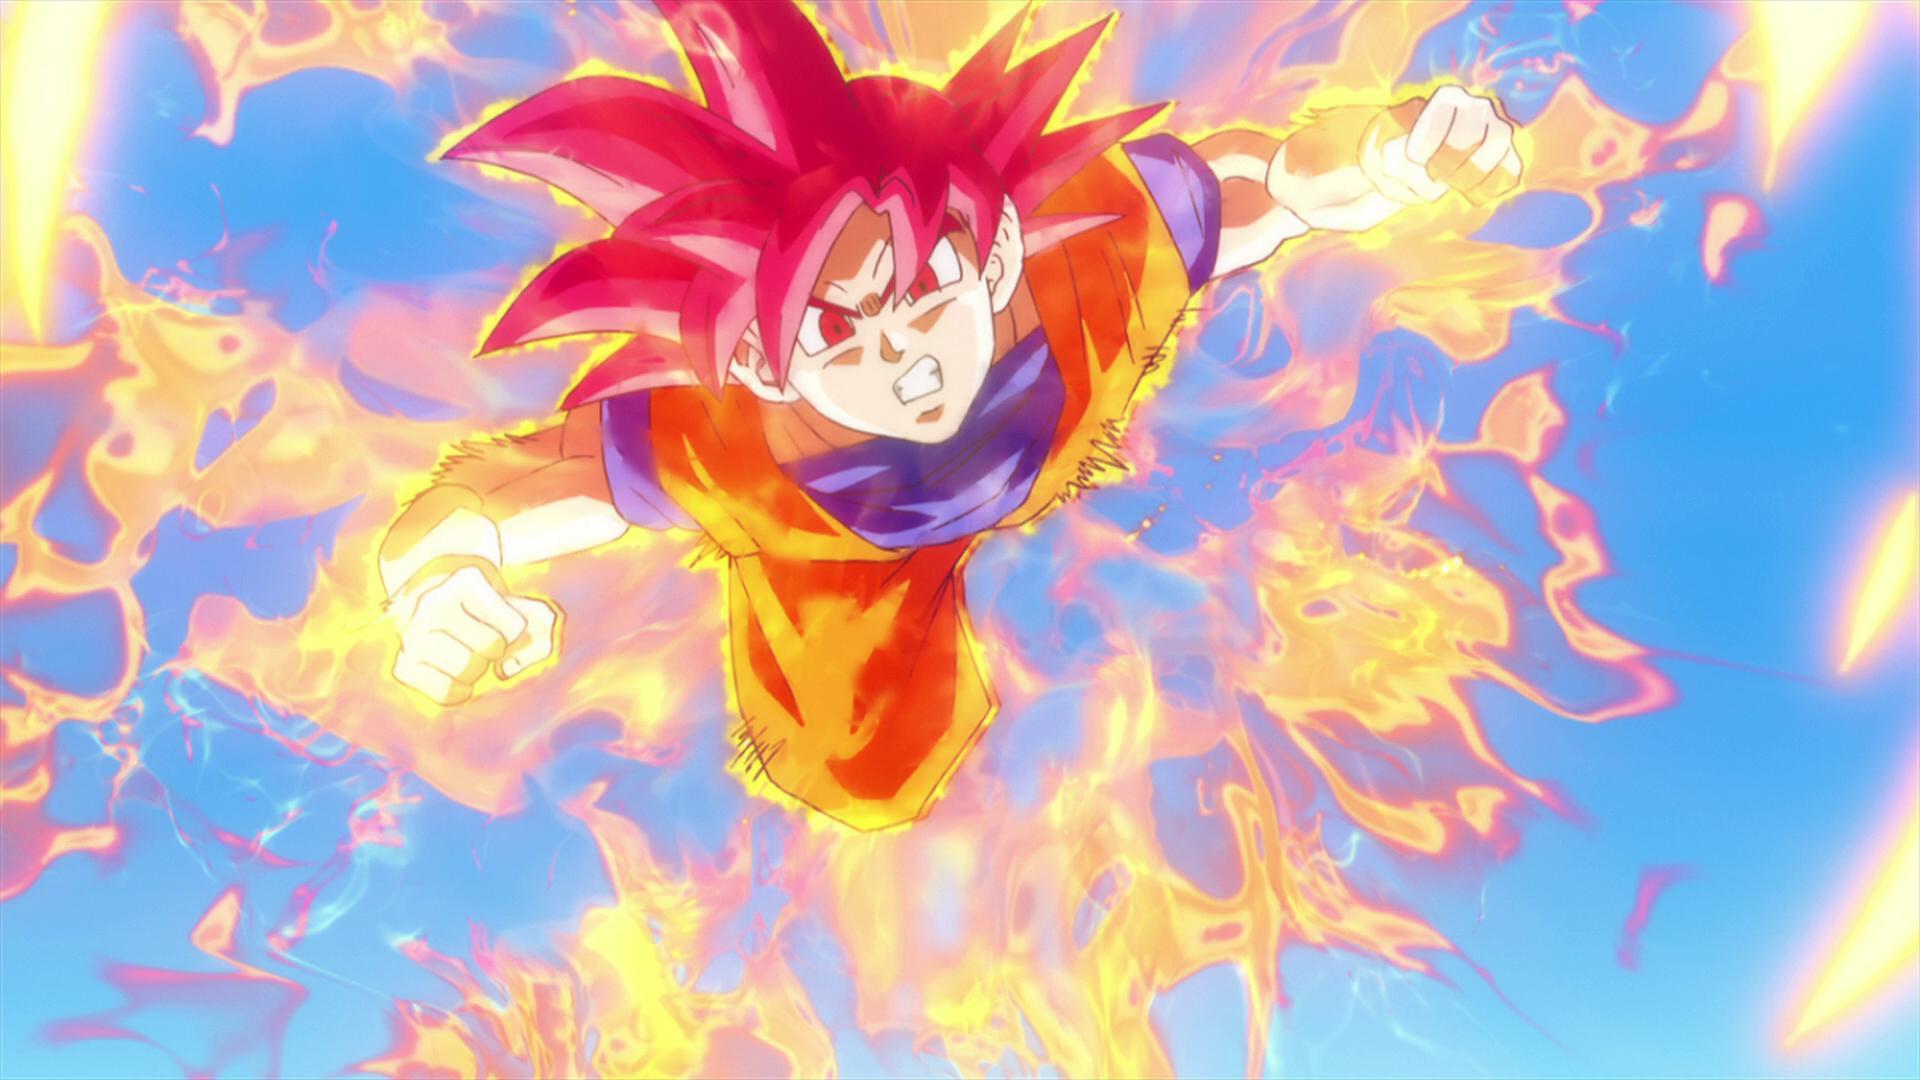 Goku Super Saiyan God 1080p Wallpaper. Dragon Ball. Dragon